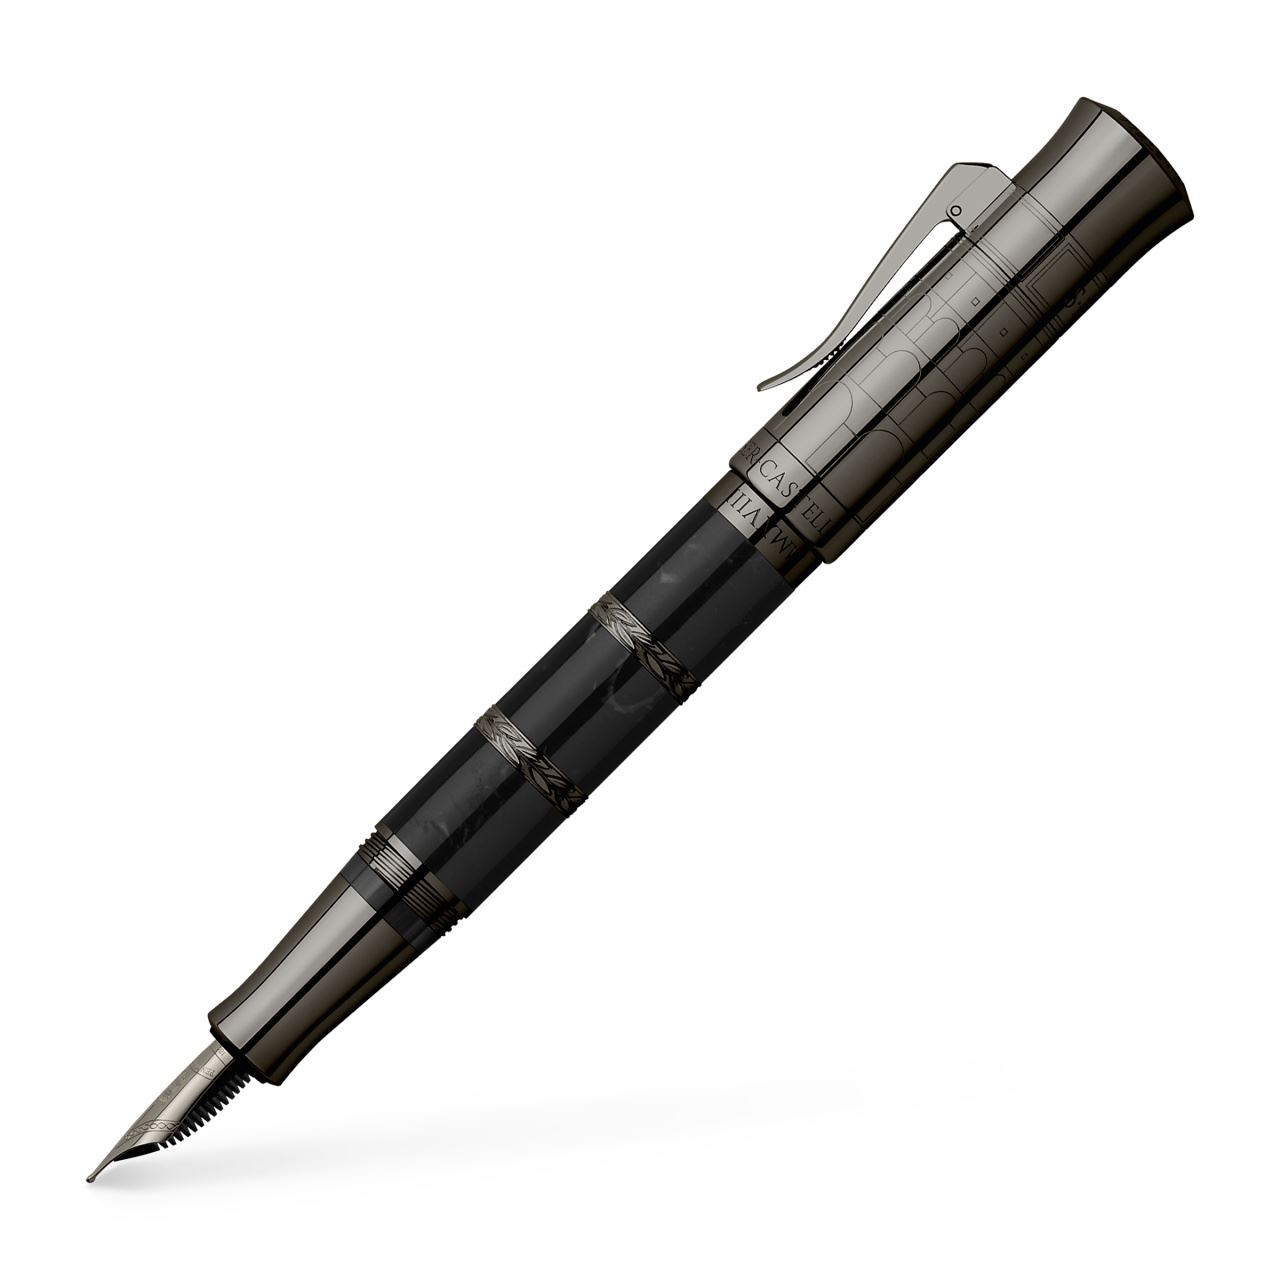 Graf-von-Faber-Castell - Penna stilografica Pen of the Year 2018 Black Edition, Medio